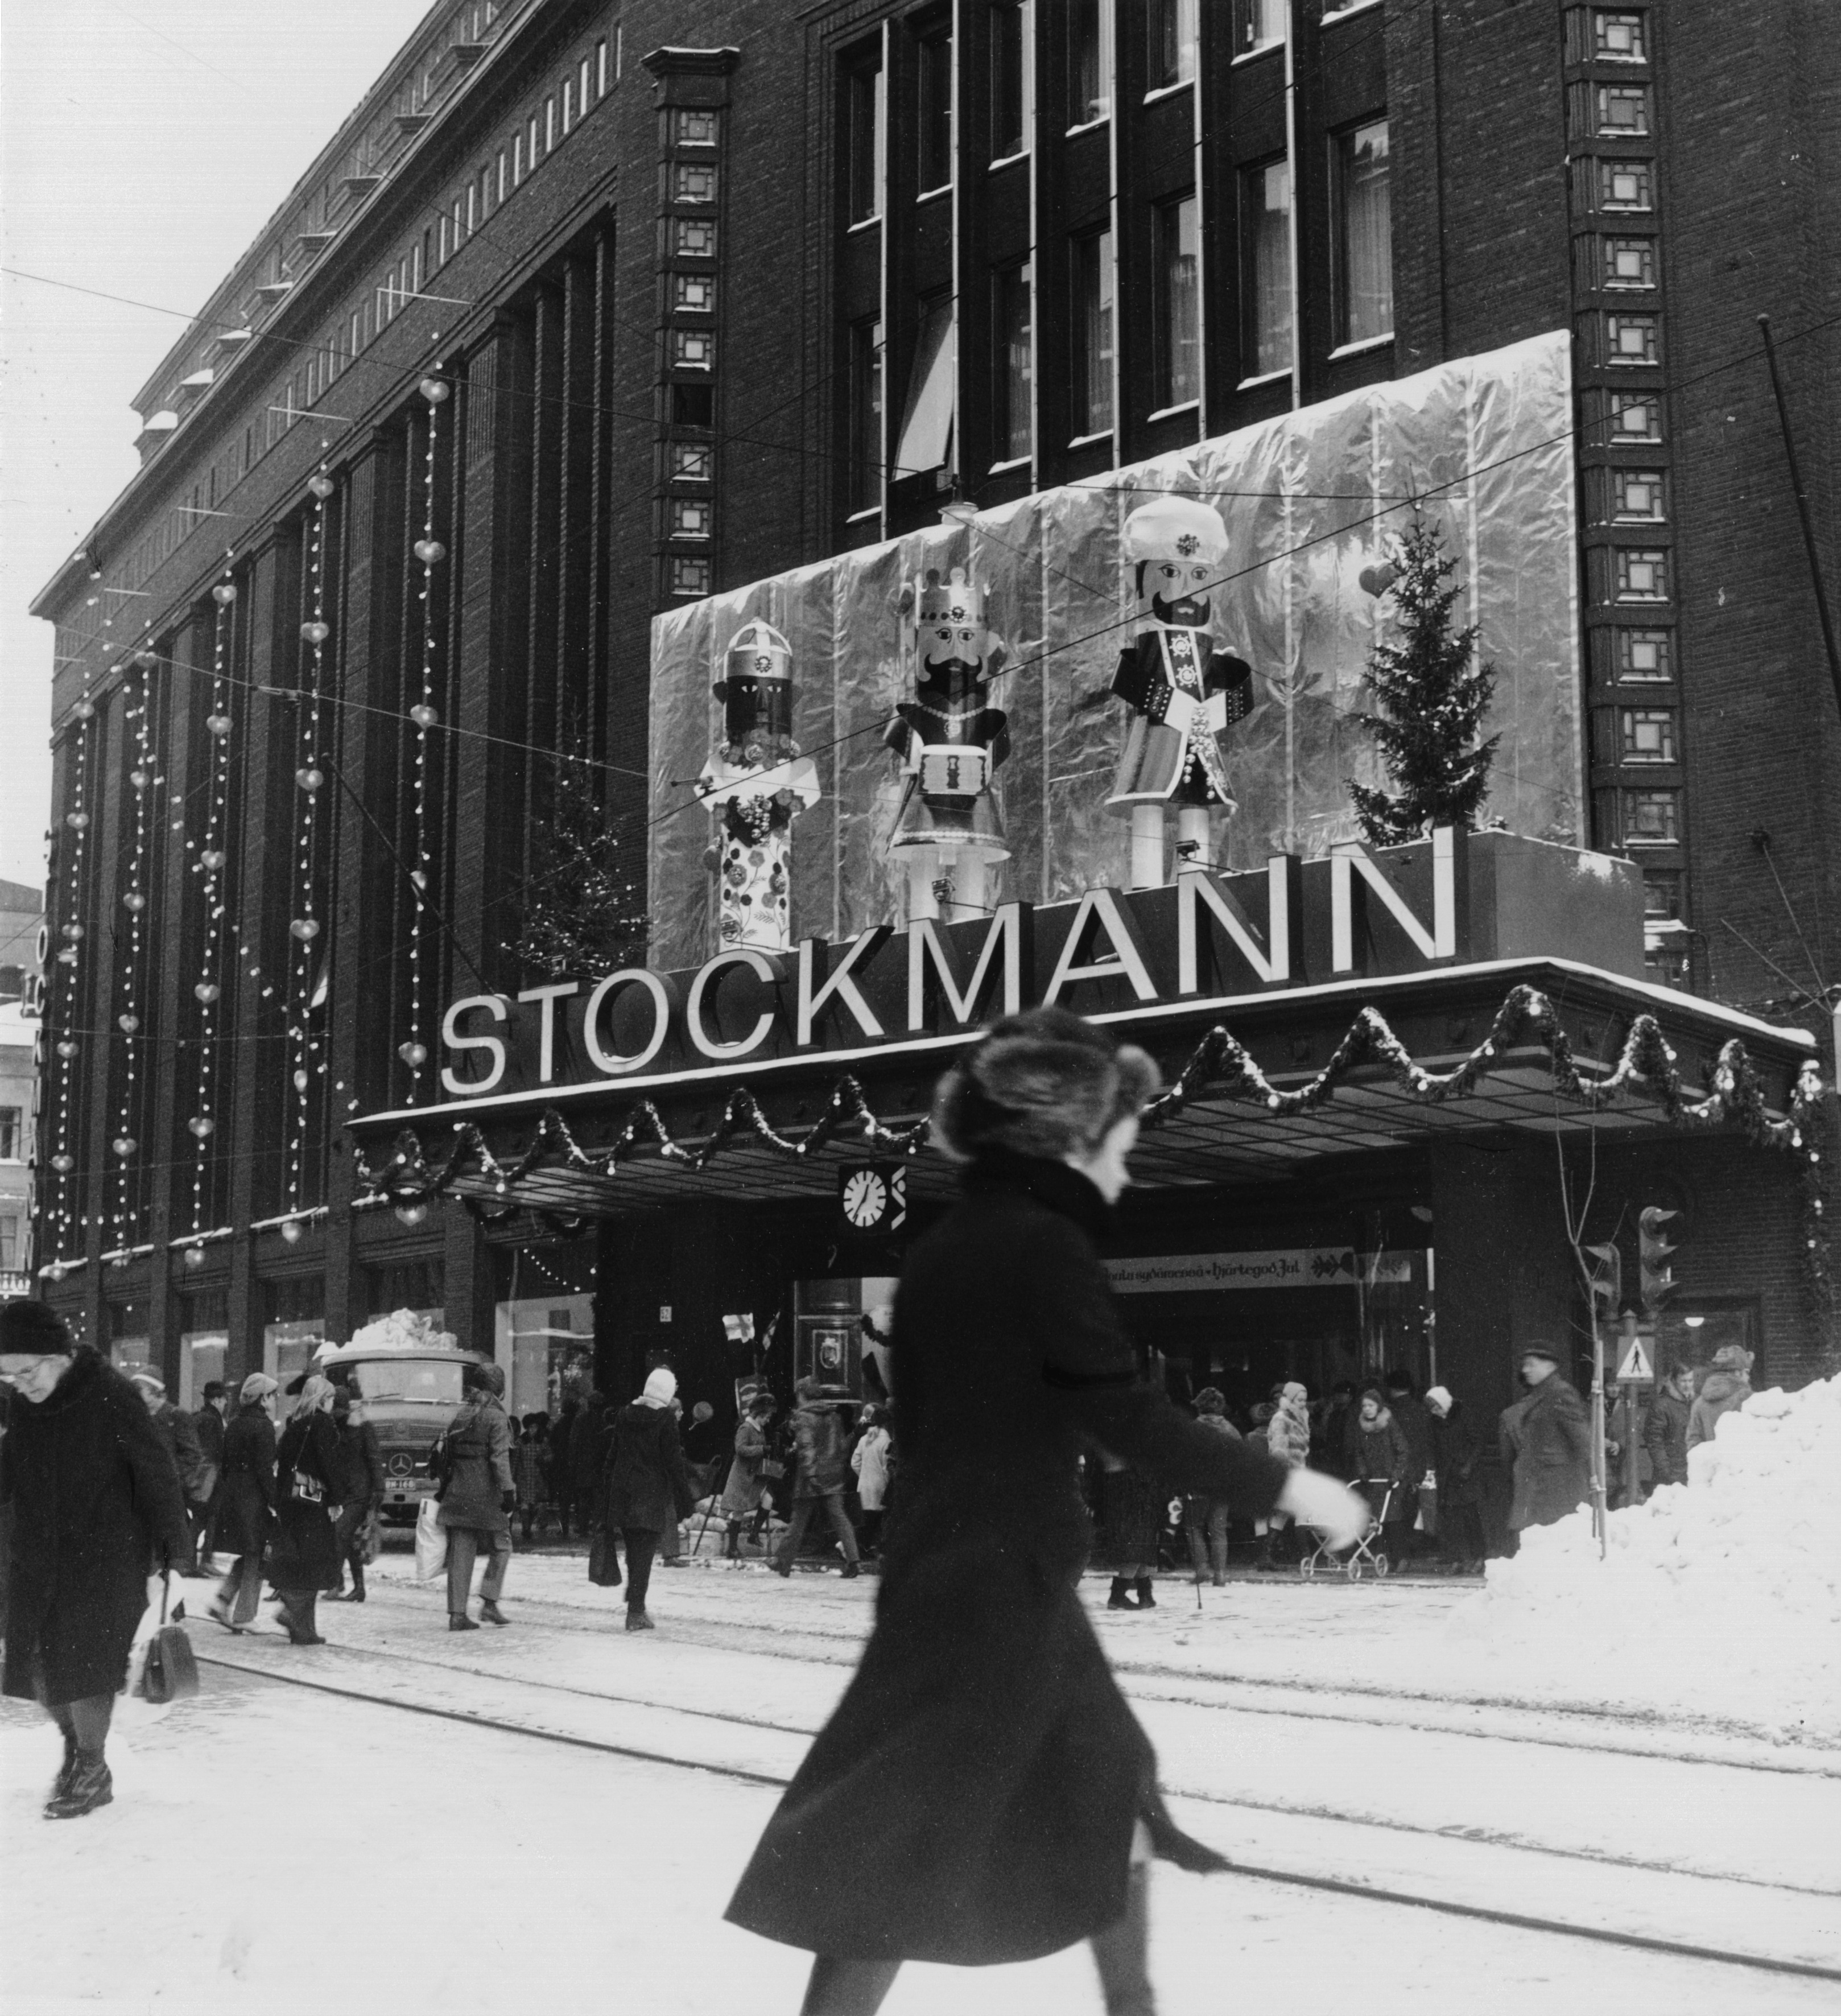 Oy Stockmann Ab. Tavaratalon joulukoristeita Aleksanterinkadun puoleisen sisäänkäynnin yläpuolella. Aleksanterinkatu 52.